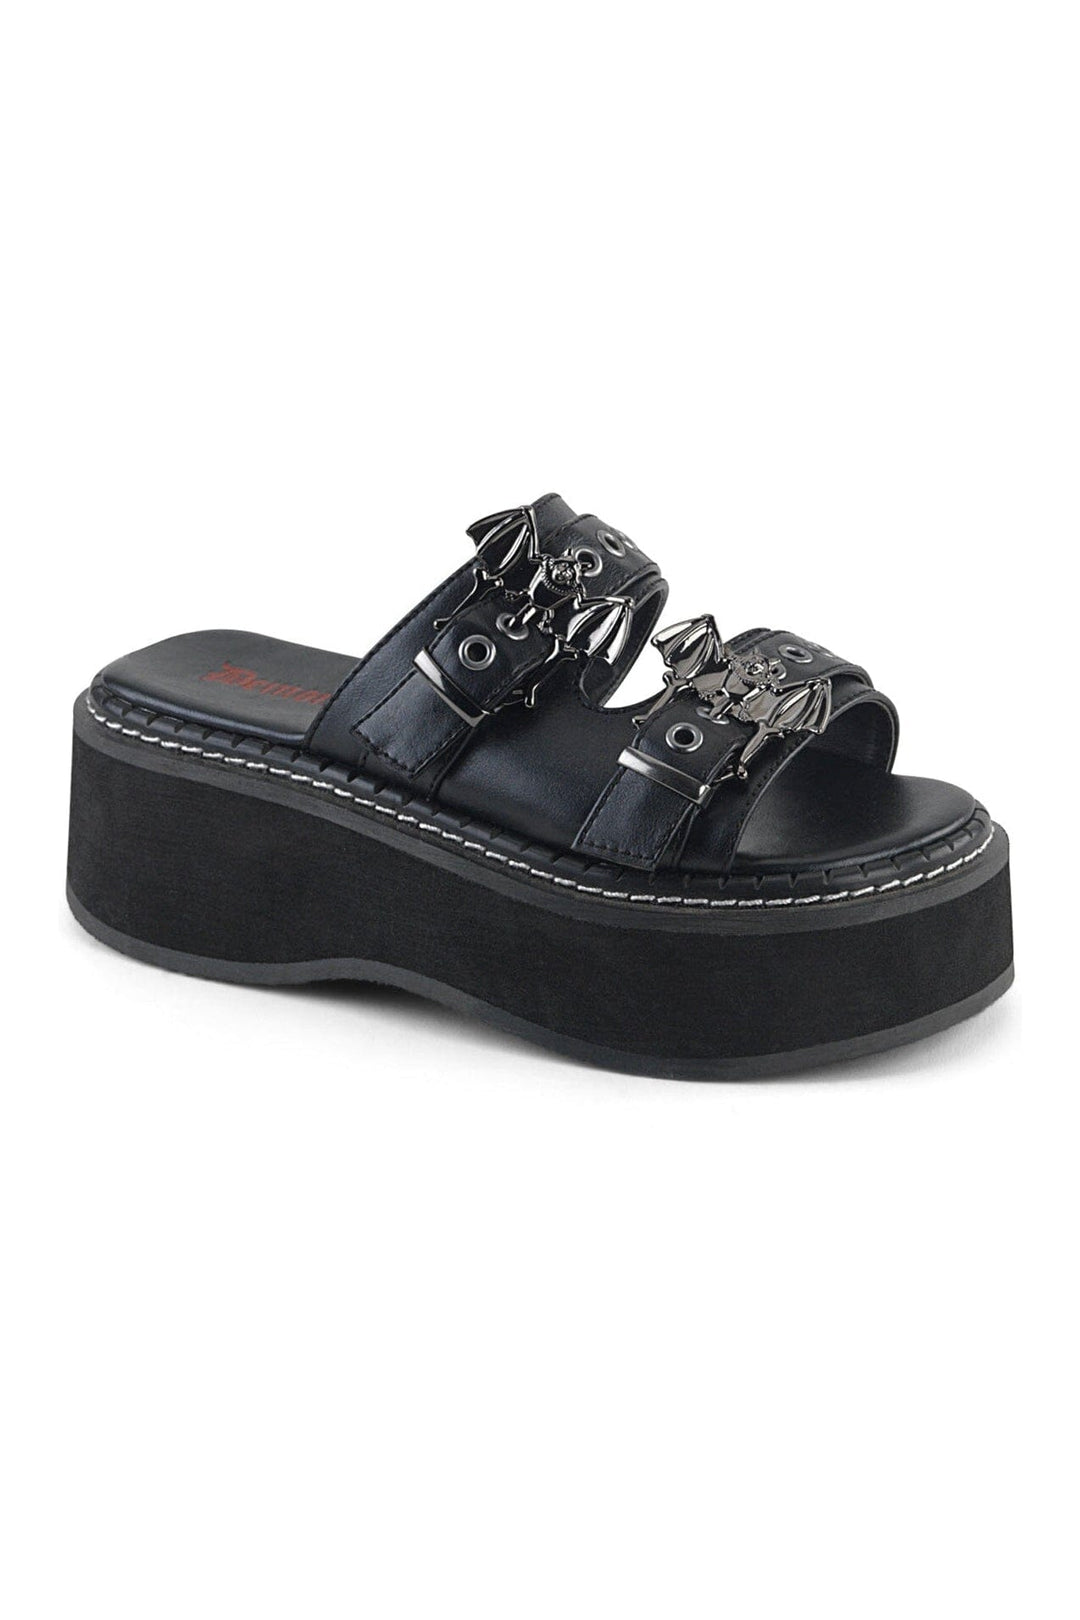 EMILY-100 Black Vegan Leather Slide-Slides-Demonia-Black-12-Vegan Leather-SEXYSHOES.COM